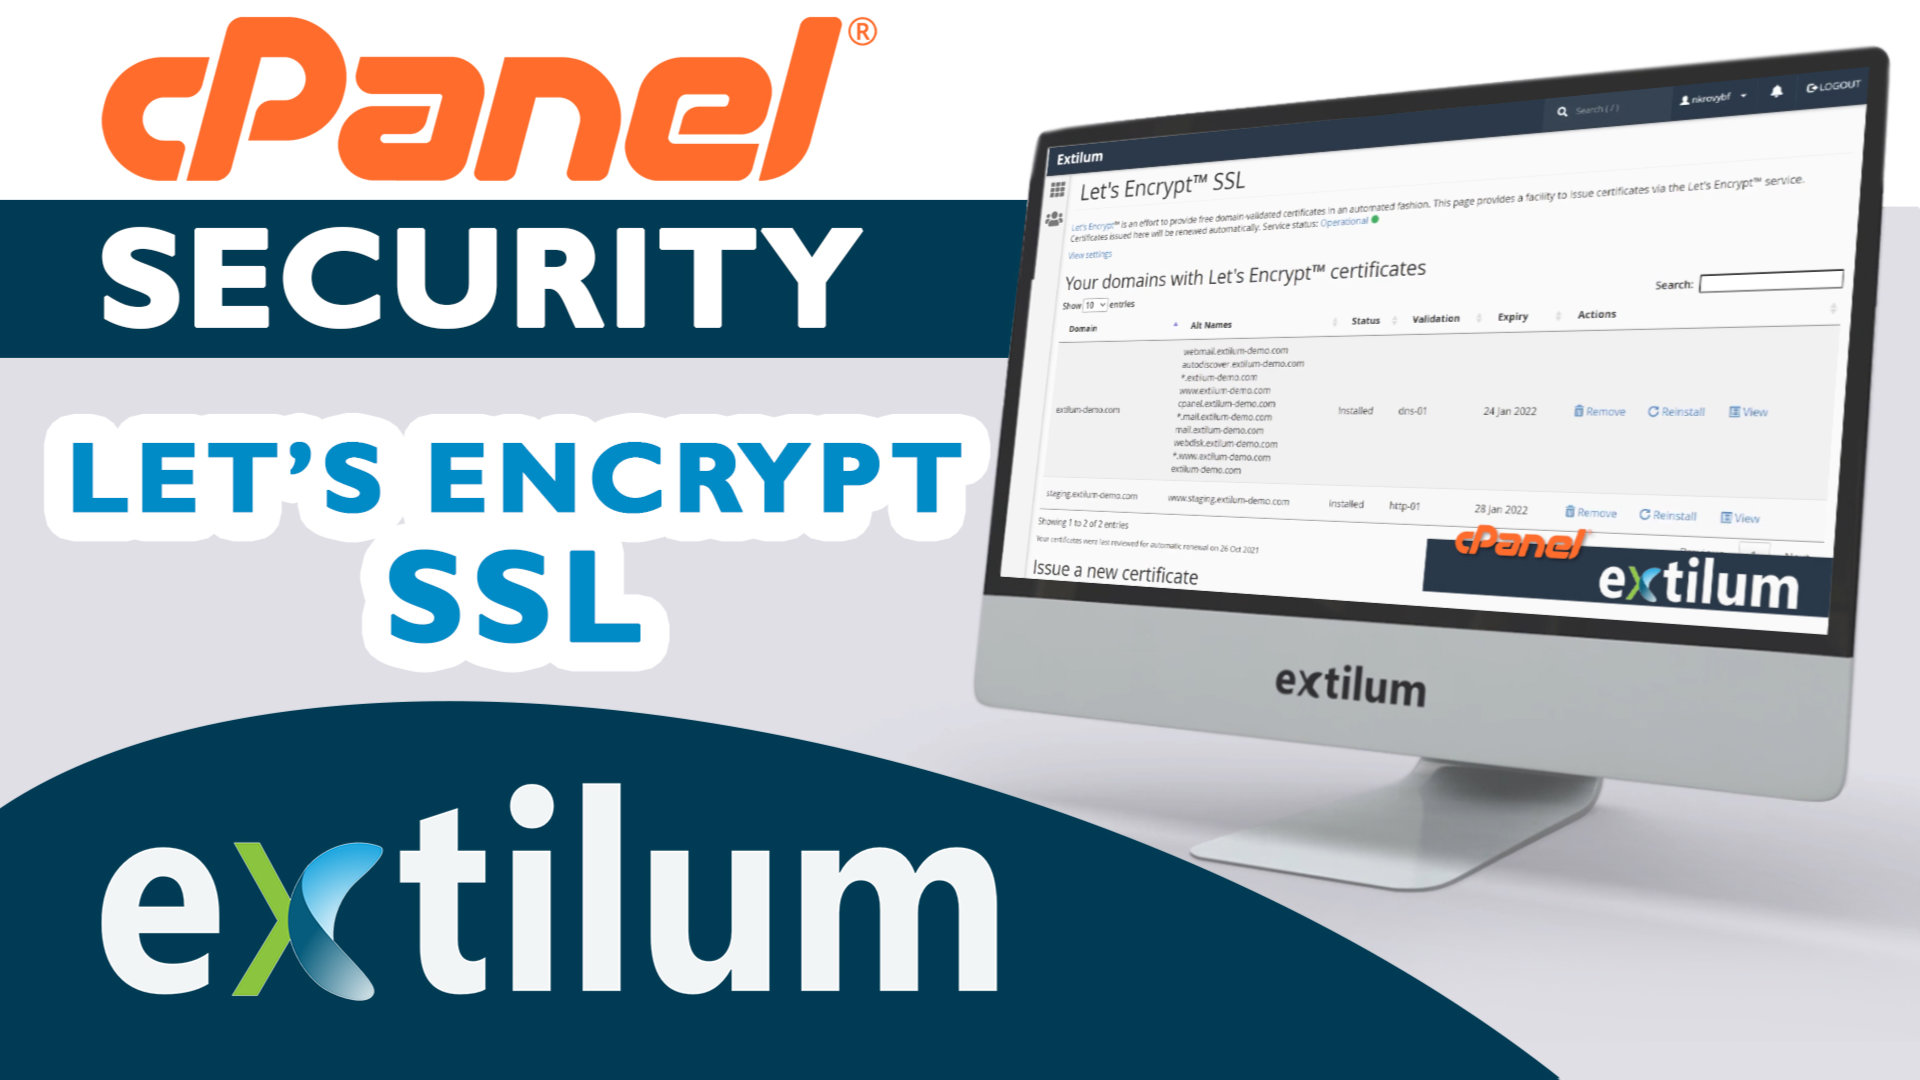 Extilum cpanel - security - lets encrypt ssl